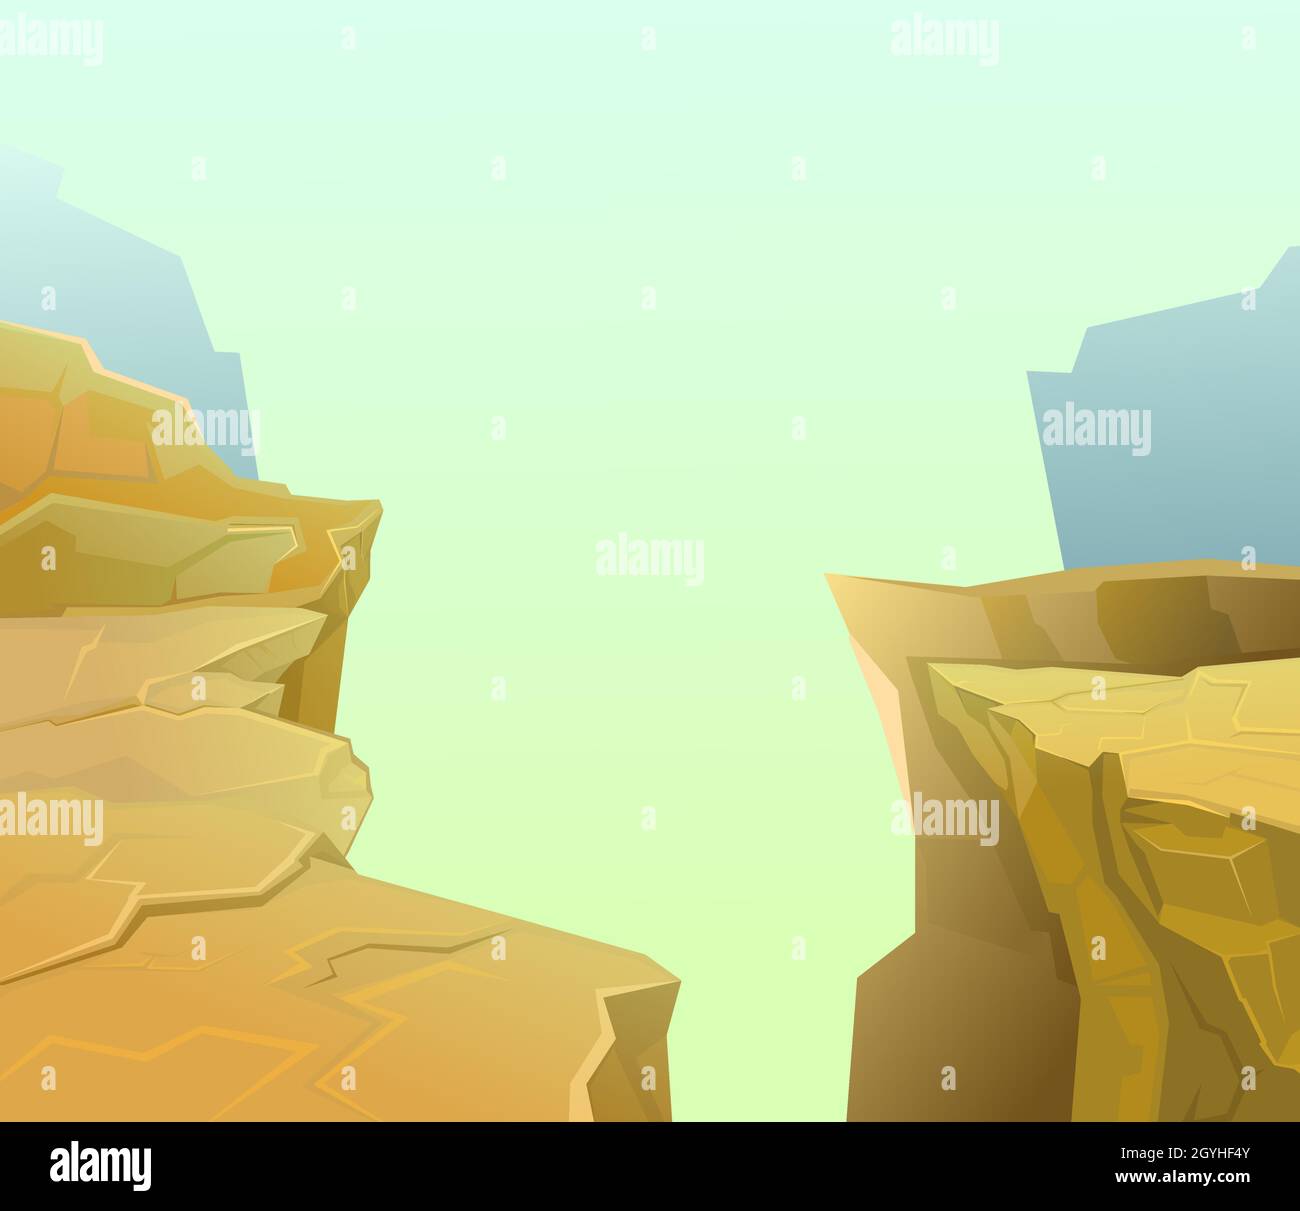 Felsige Klippen. Der Rand eines bodenlosen Abgrunds. Bergnebel. Wüstenlandschaft mit Steinen. Illustration im Cartoon-Stil flache Design. Vektor Stock Vektor